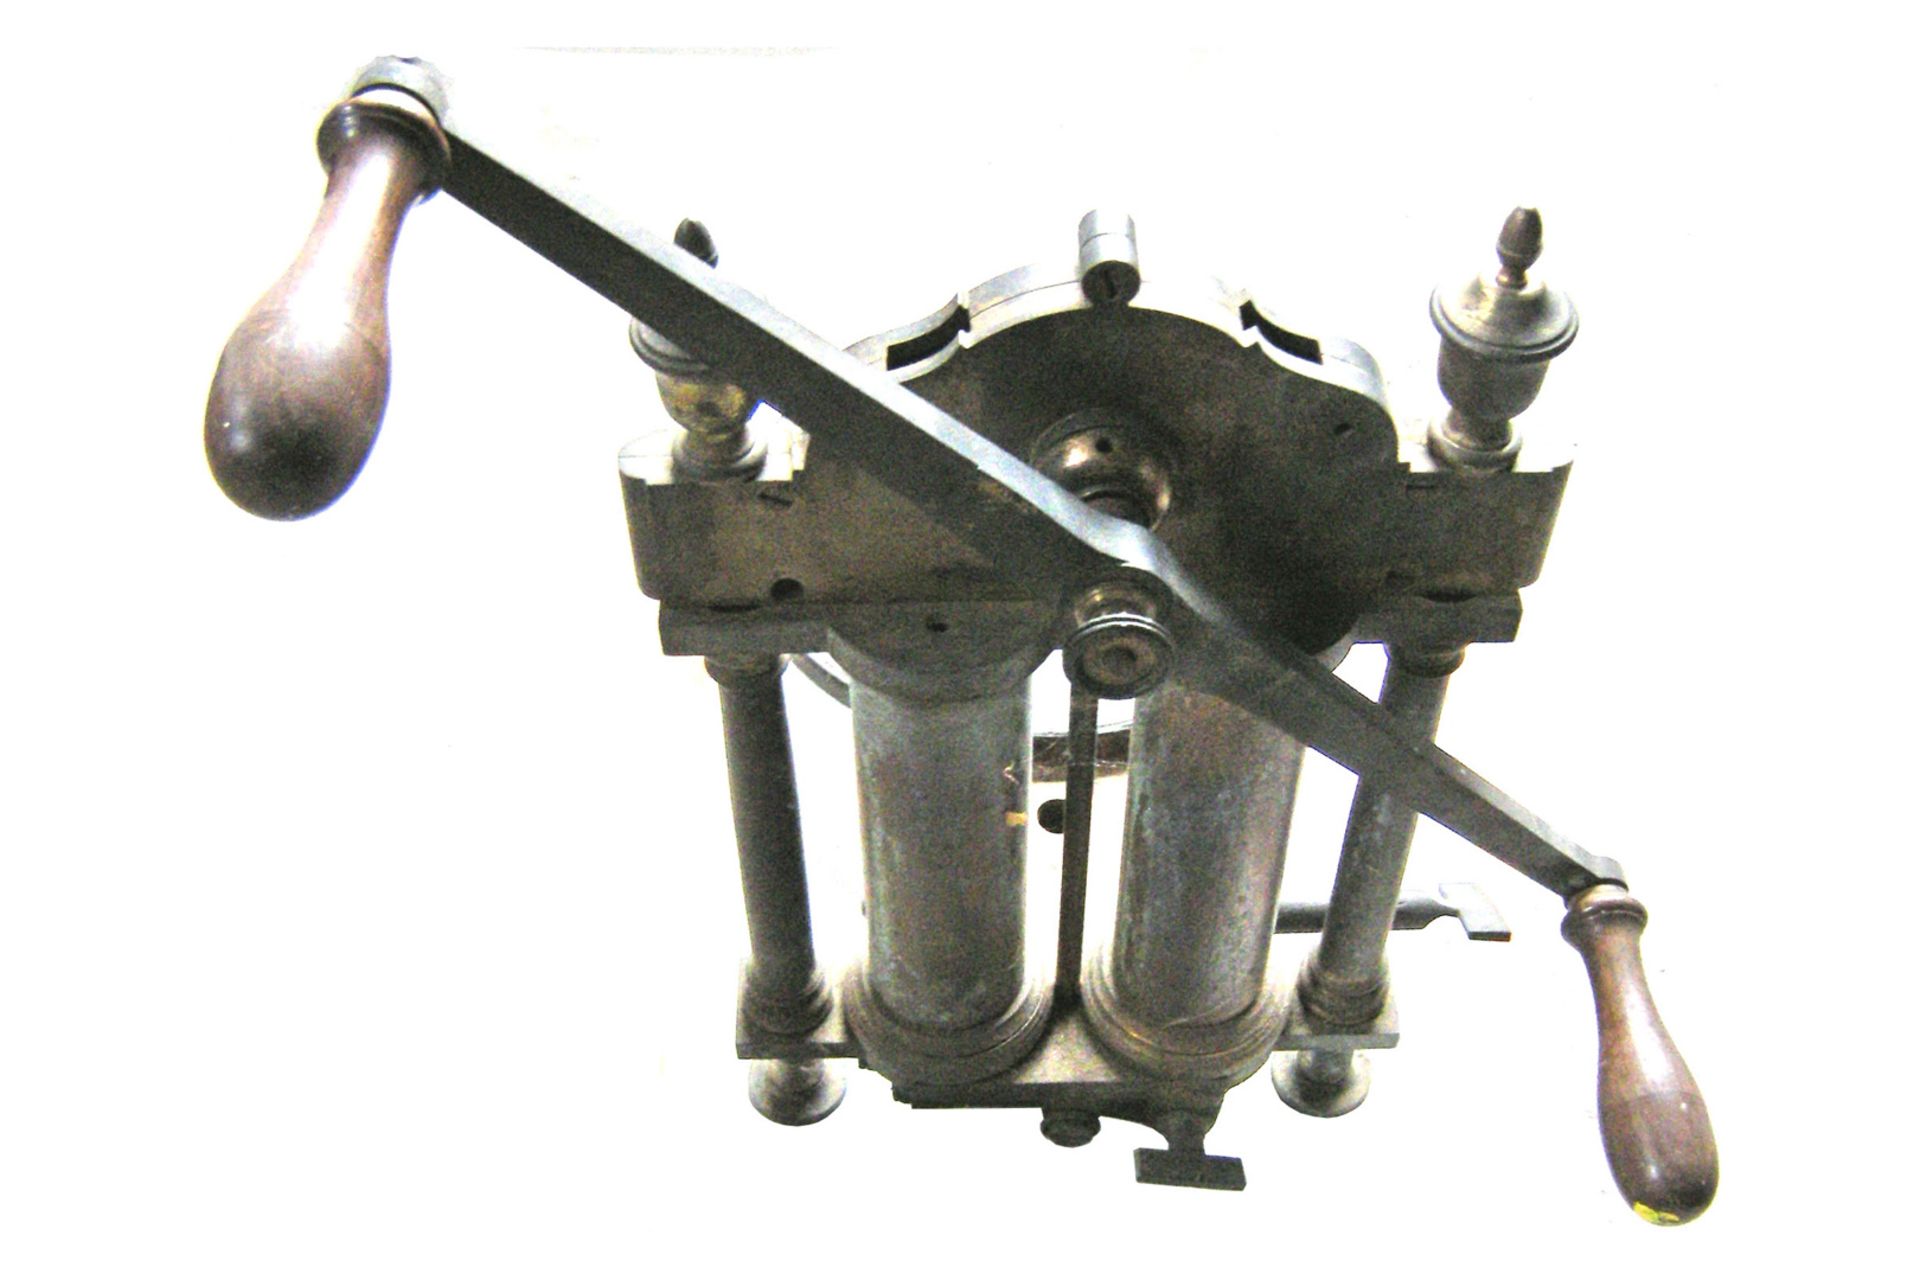 Zweistiefelige Vakuumpumpe, ohne Glaskolben, 1880, Abmessung 50x33x43cm, ca. 10kg - Bild 4 aus 8